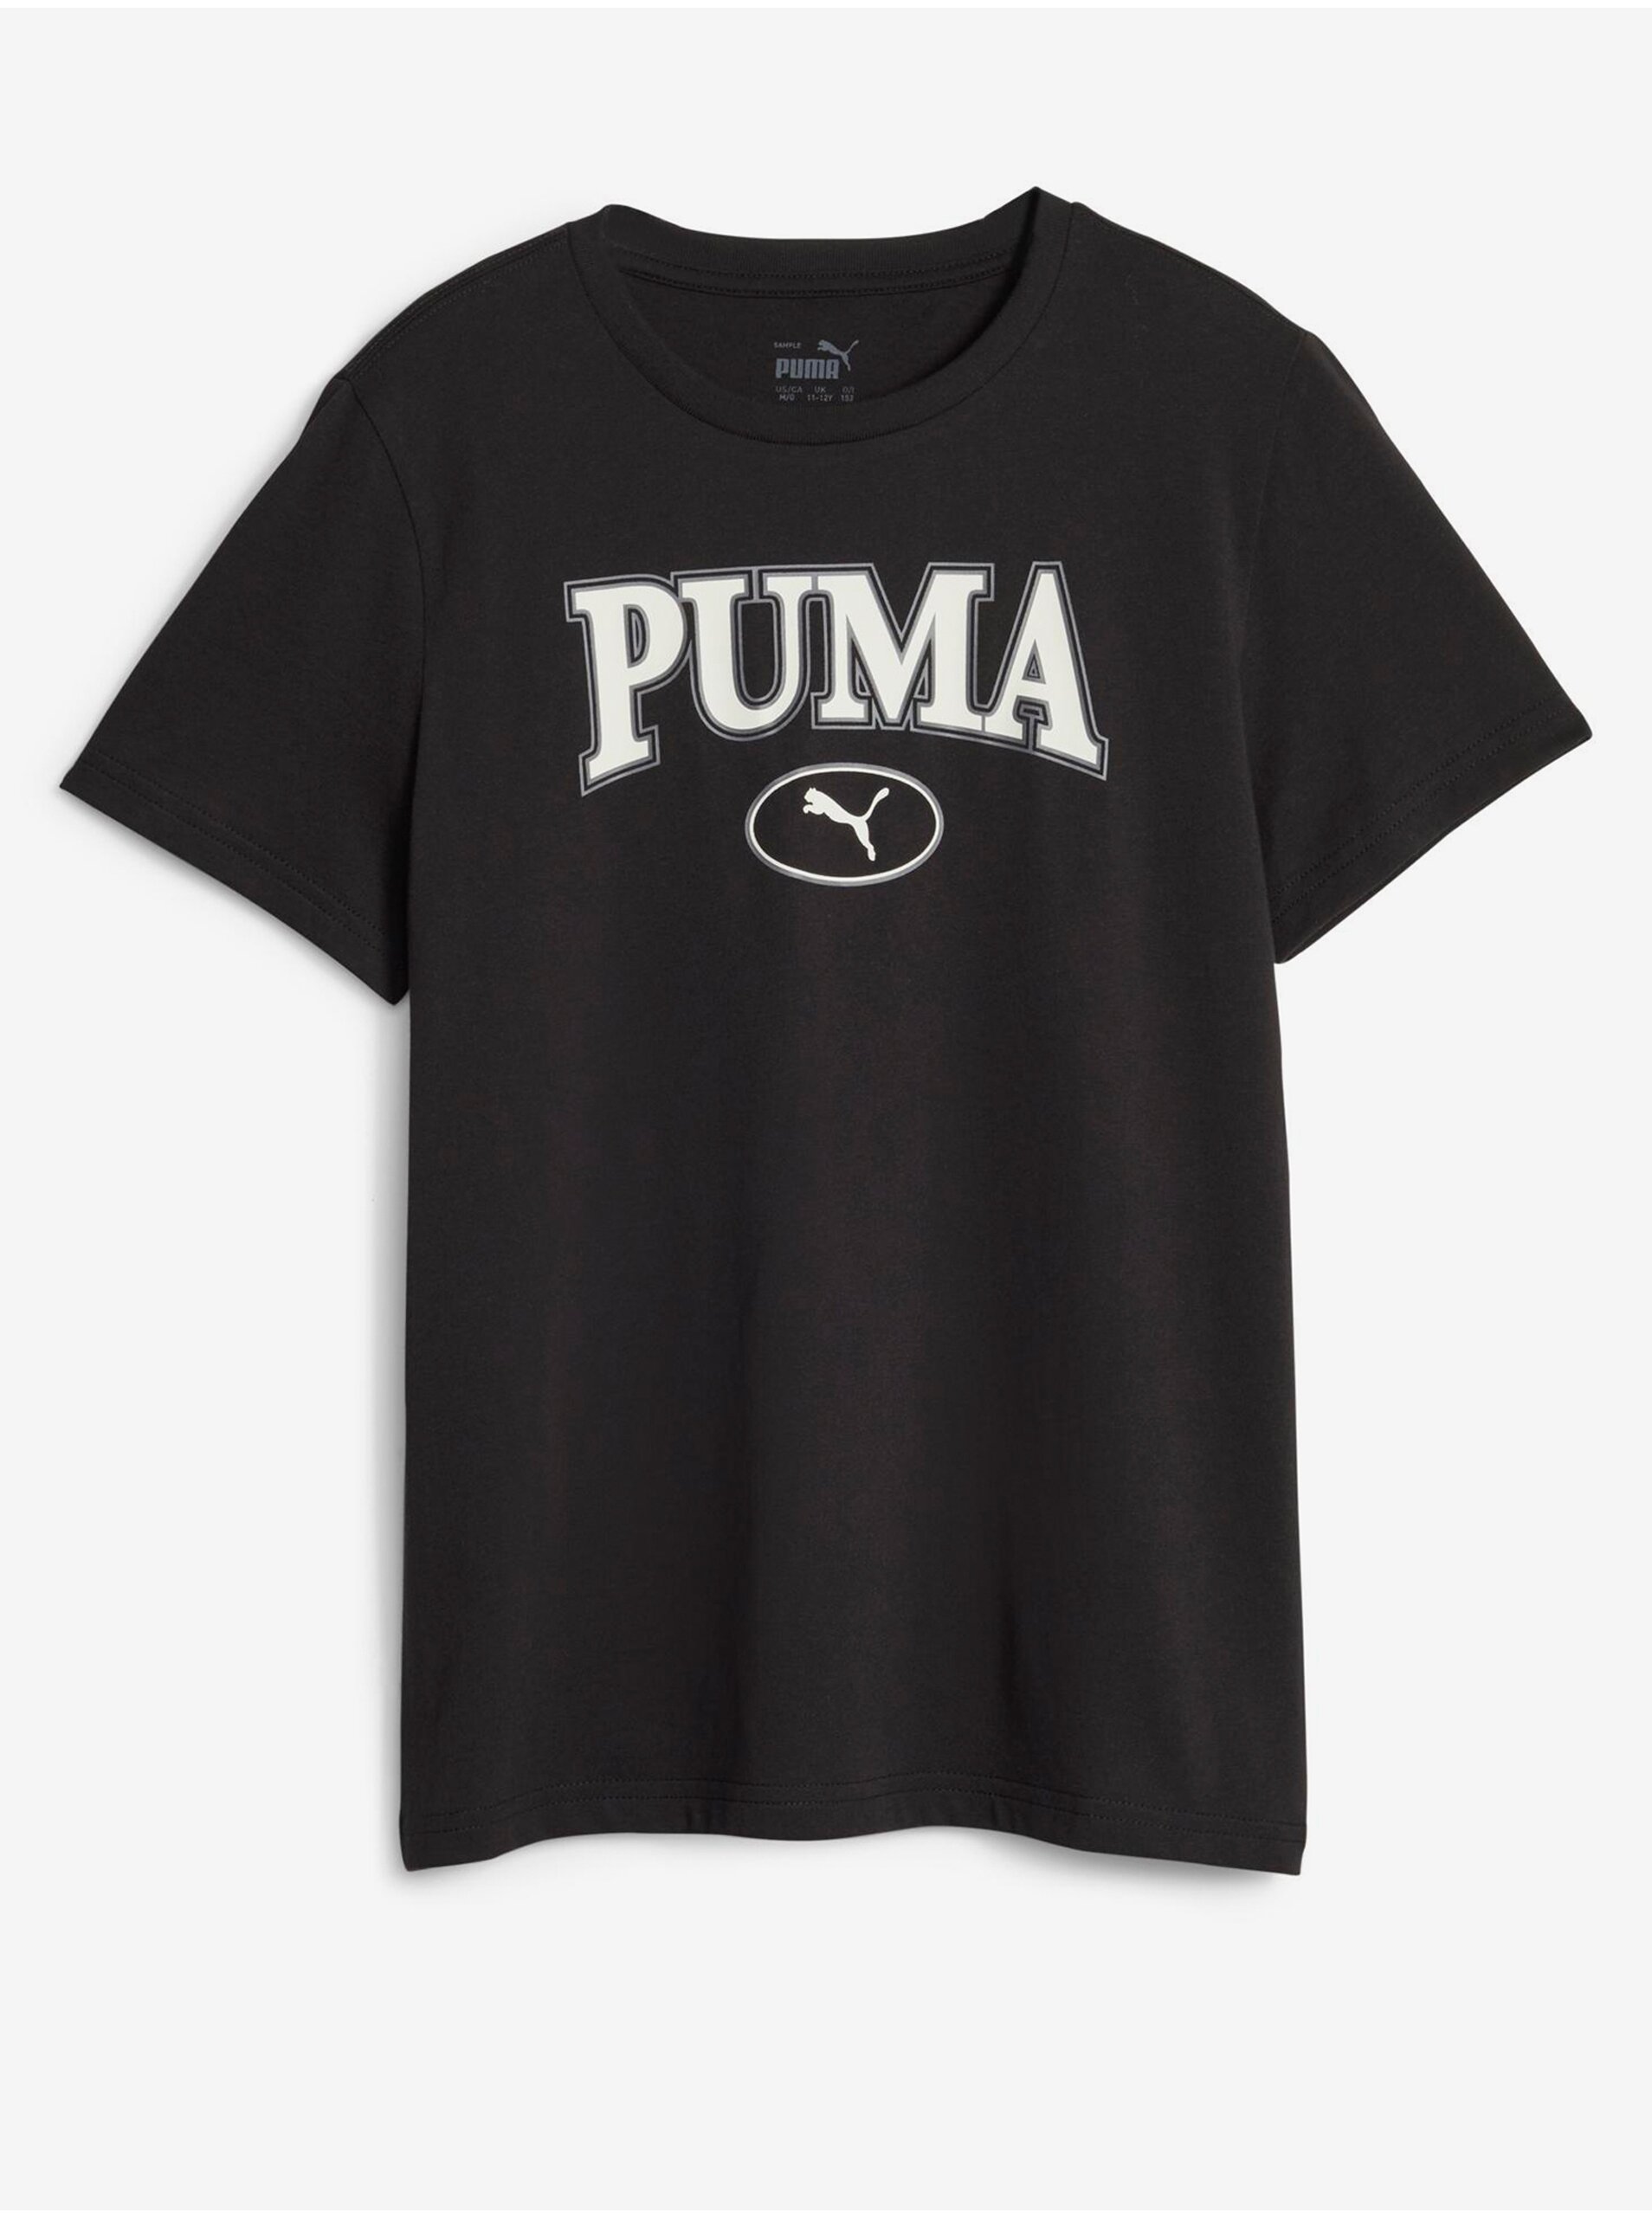 Black Boys T-Shirt Puma Squad - Boys